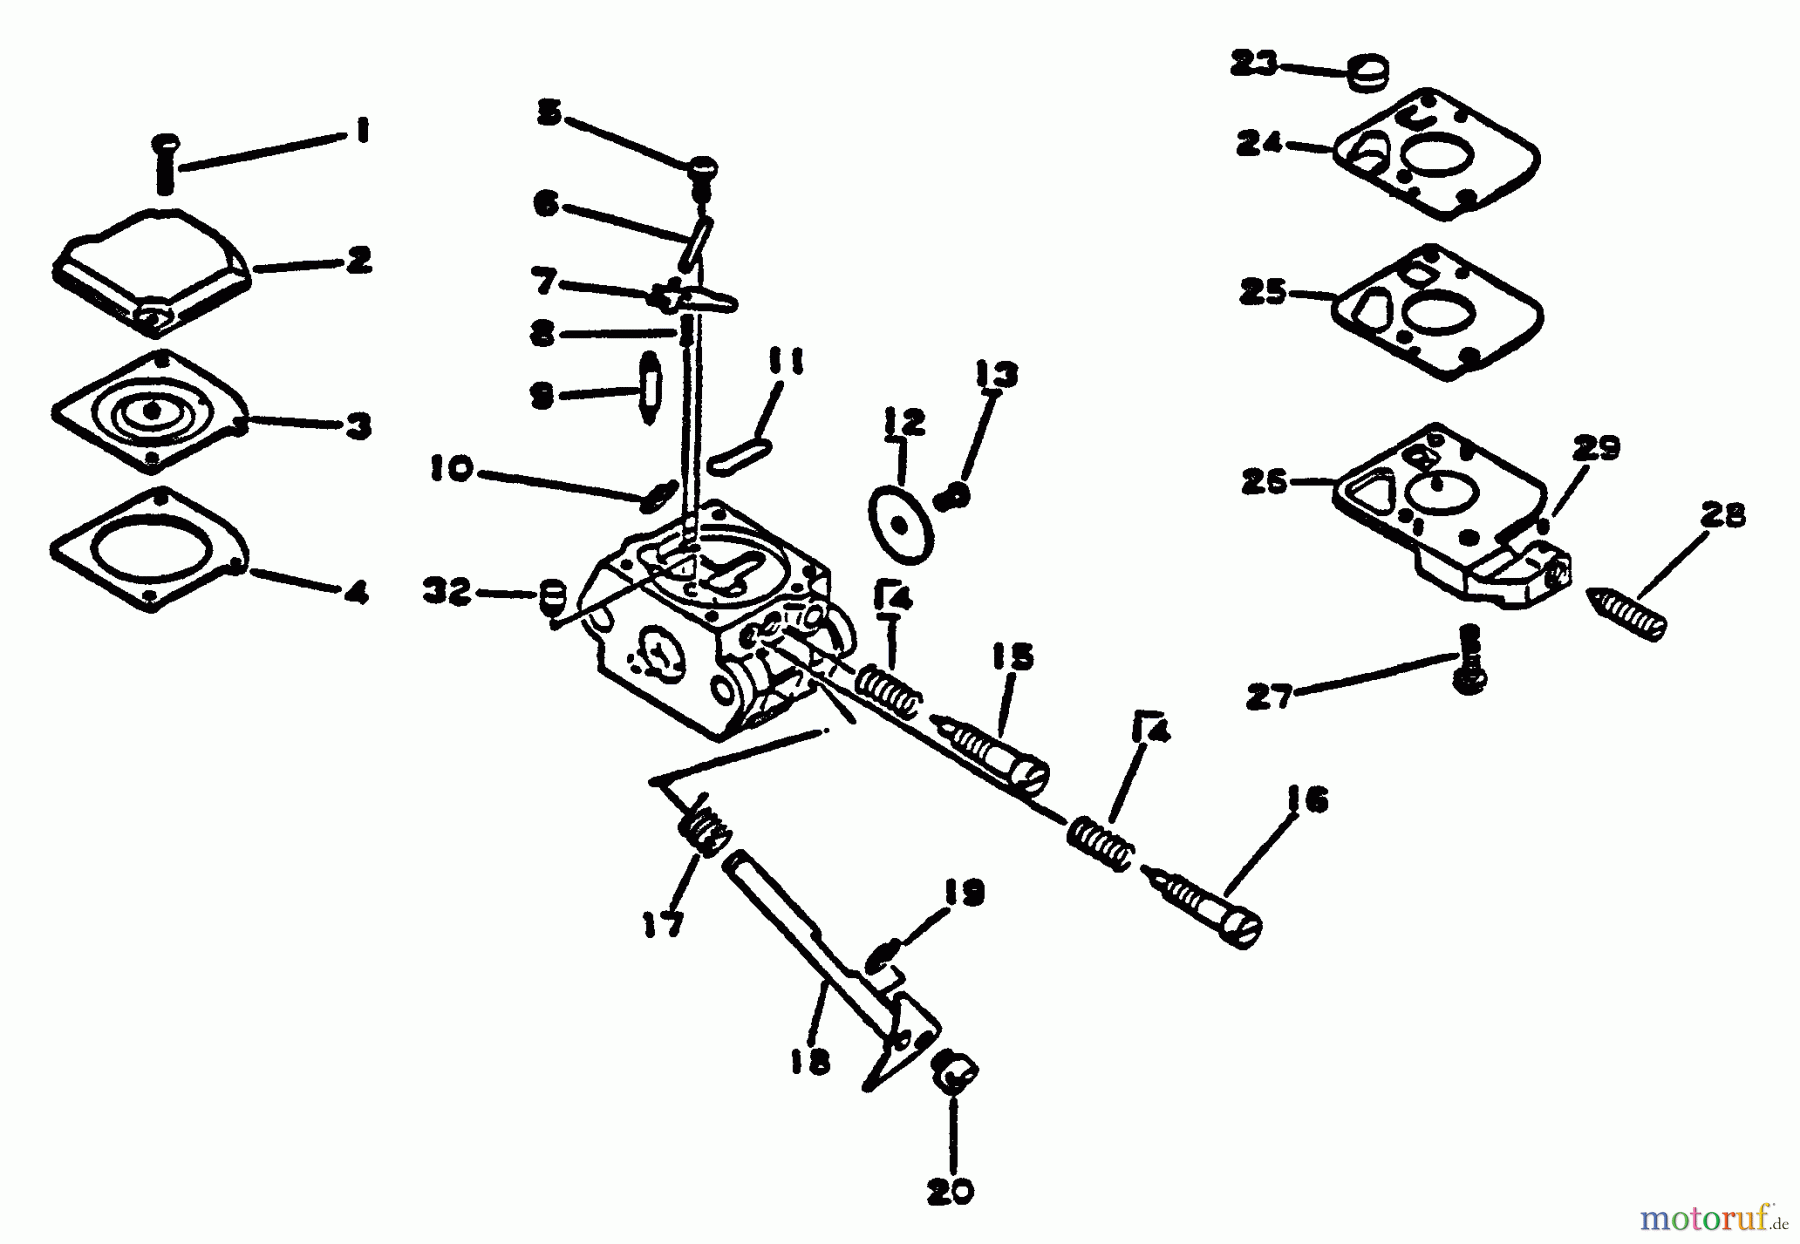  Echo Trimmer, Faden / Bürste SRM-1500 - Echo String Trimmer Carburetor